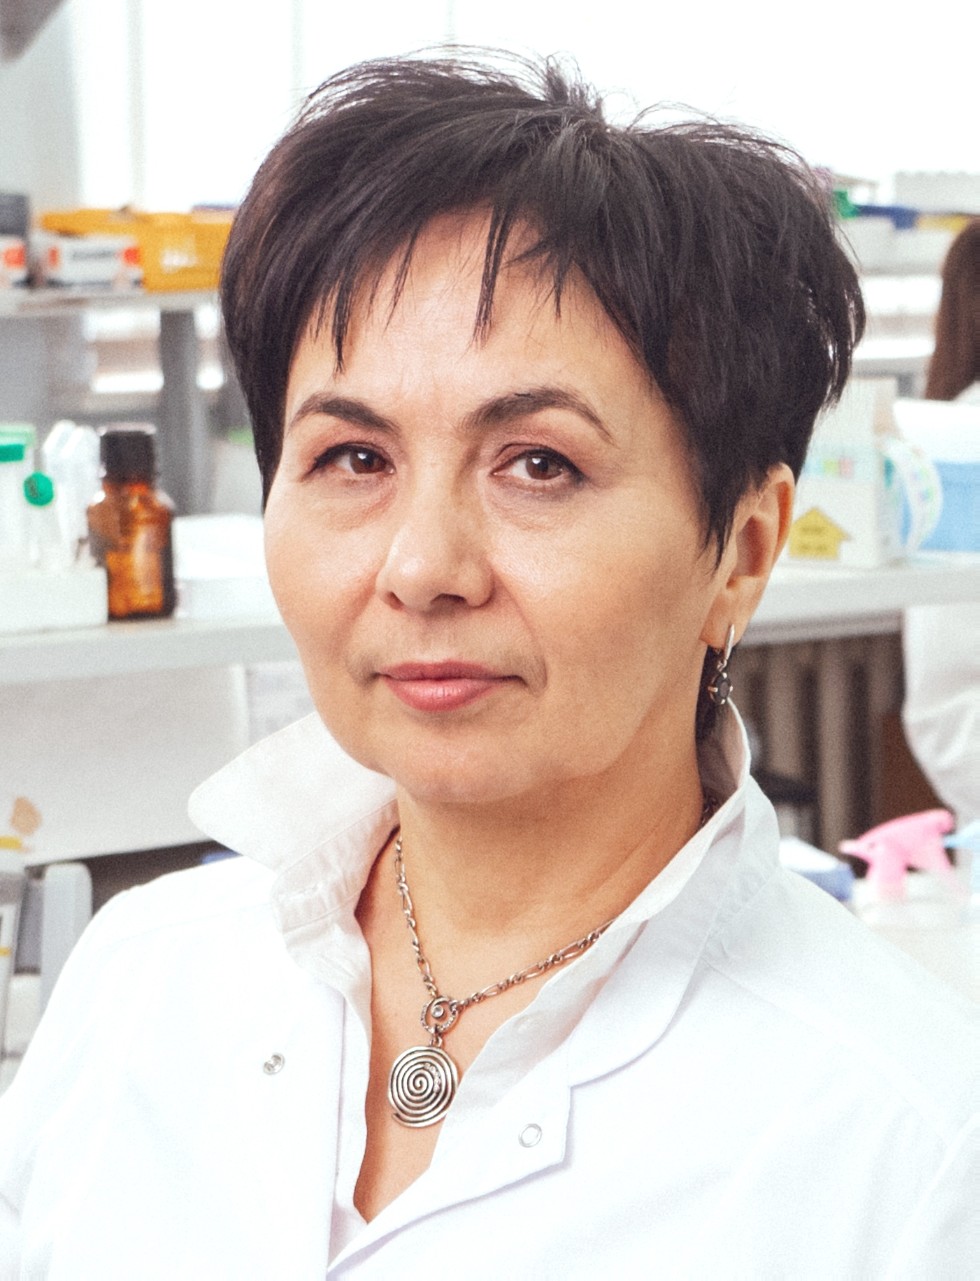 Рамзия Киямова: 'Наука требует постоянной напряженной работы, тишины и концентрации'